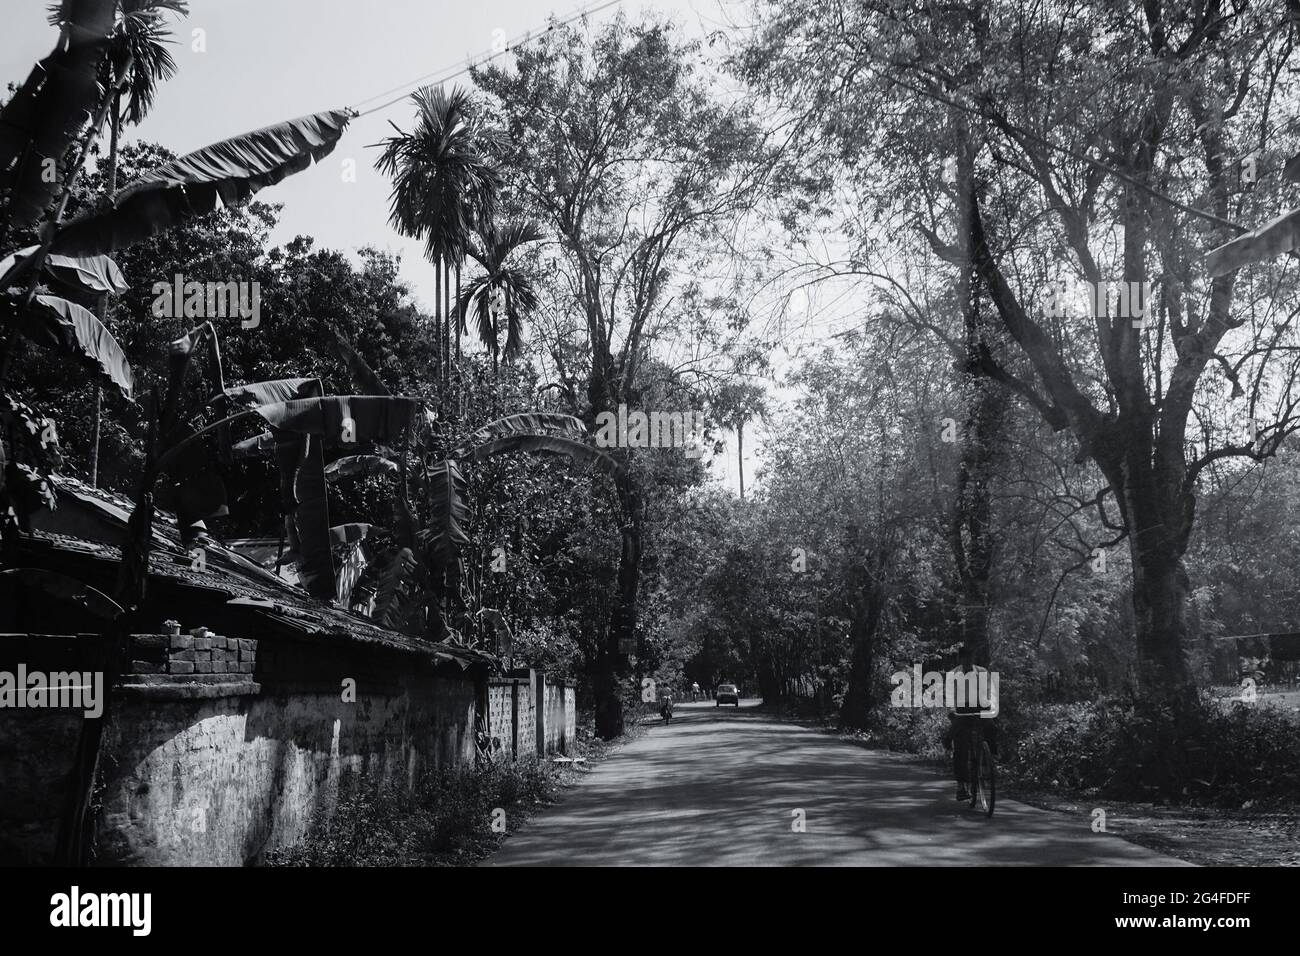 HOWRAH, BENGALA OCCIDENTALE, INDIA - 24 FEBBRAIO 2018 : una strada del villaggio con alberi e case su due lati e una persona che passa attraverso su una bicicletta. Foto Stock